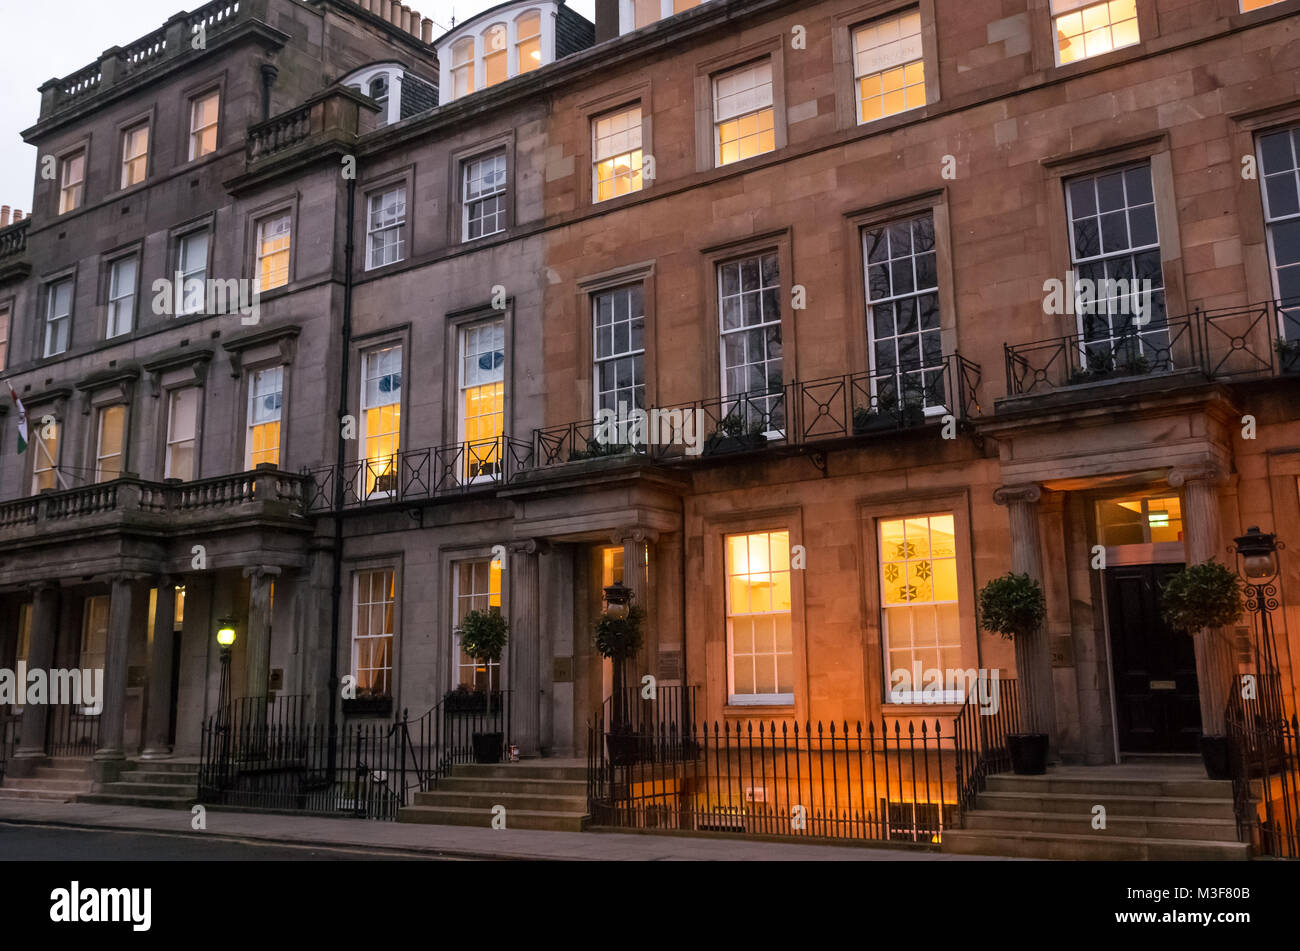 Grand edifici in stile georgiano con windows accesa fino al crepuscolo, compreso il Consolato di India con il pennone, Rutland Square, Edimburgo, Scozia, Regno Unito Foto Stock